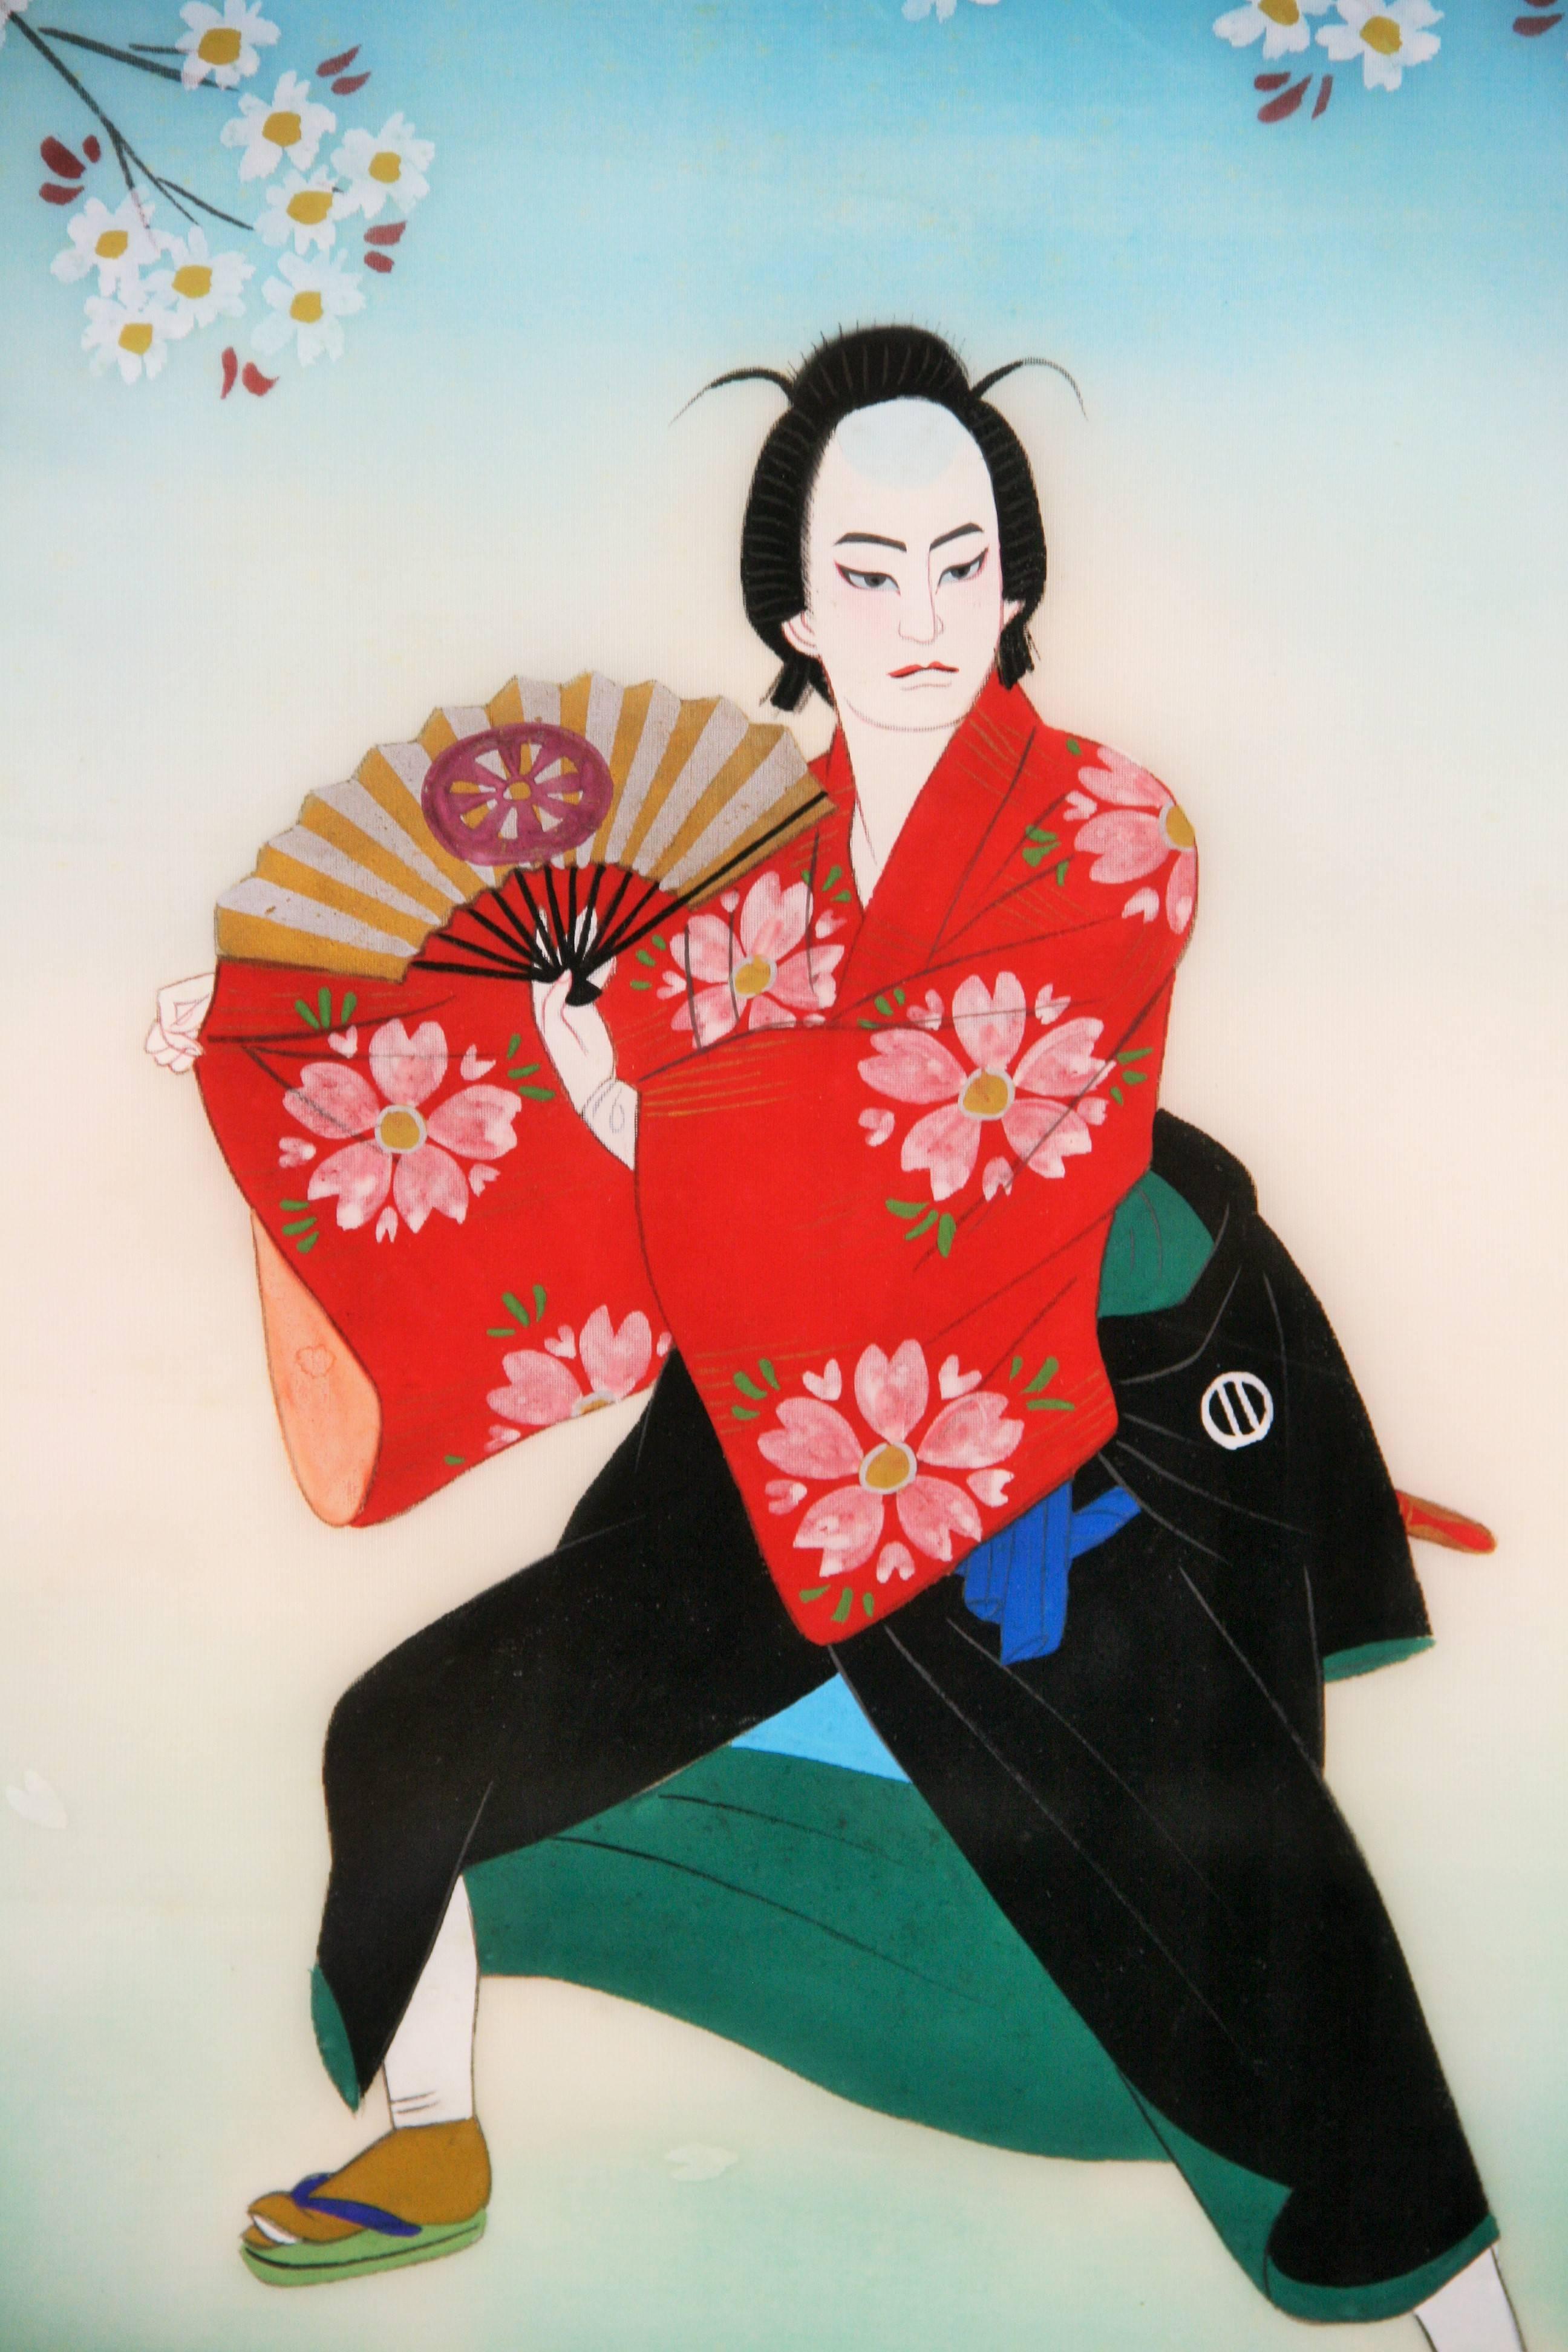  Antiquités japonaises  Danseuse  Figuratif  Peinture sur soie des années 1920 - Painting de Unknown